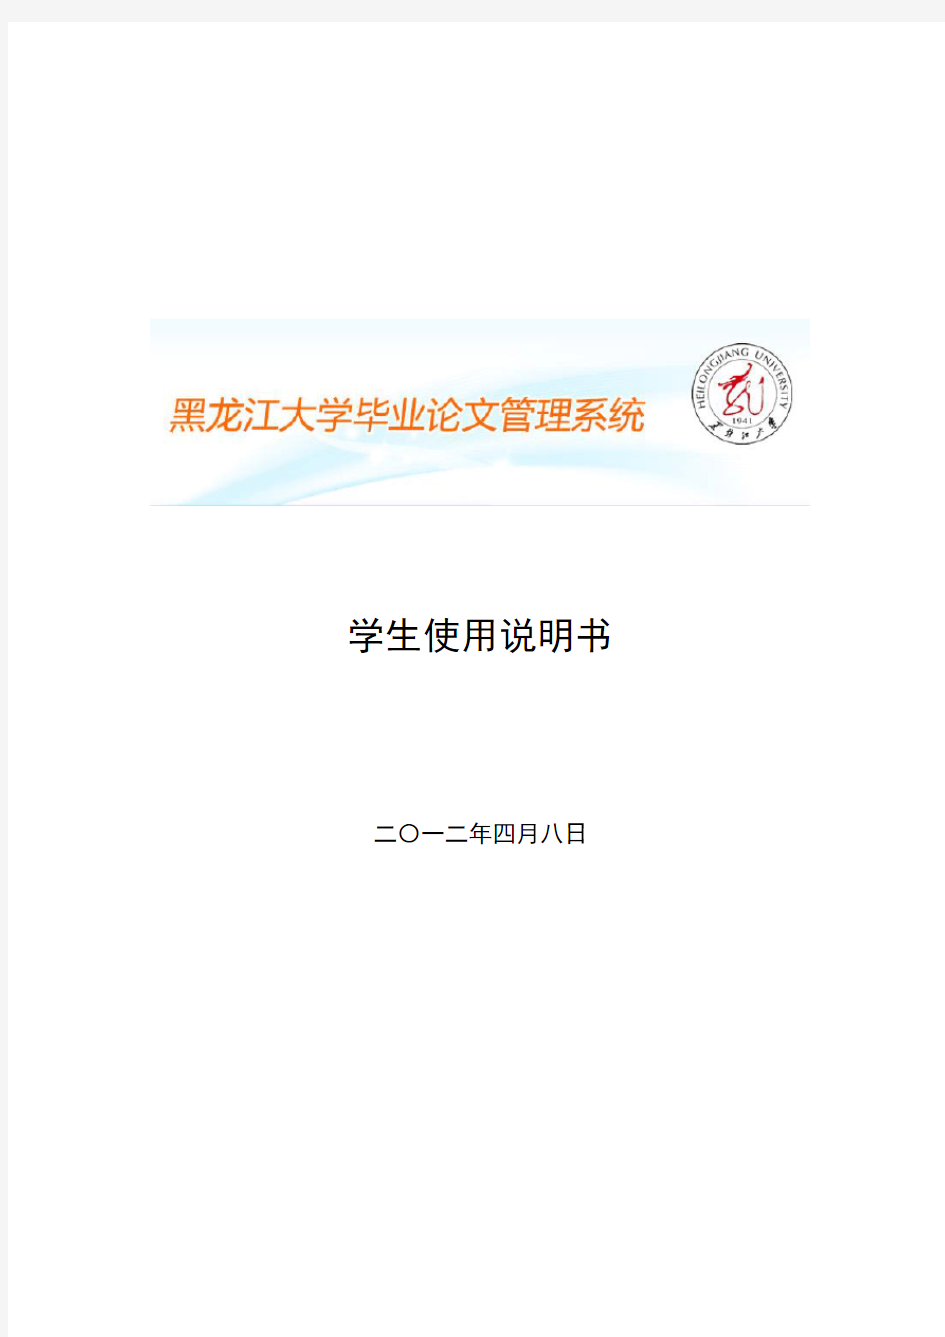 黑龙江大学毕业论文管理网络系统学生使用说明书